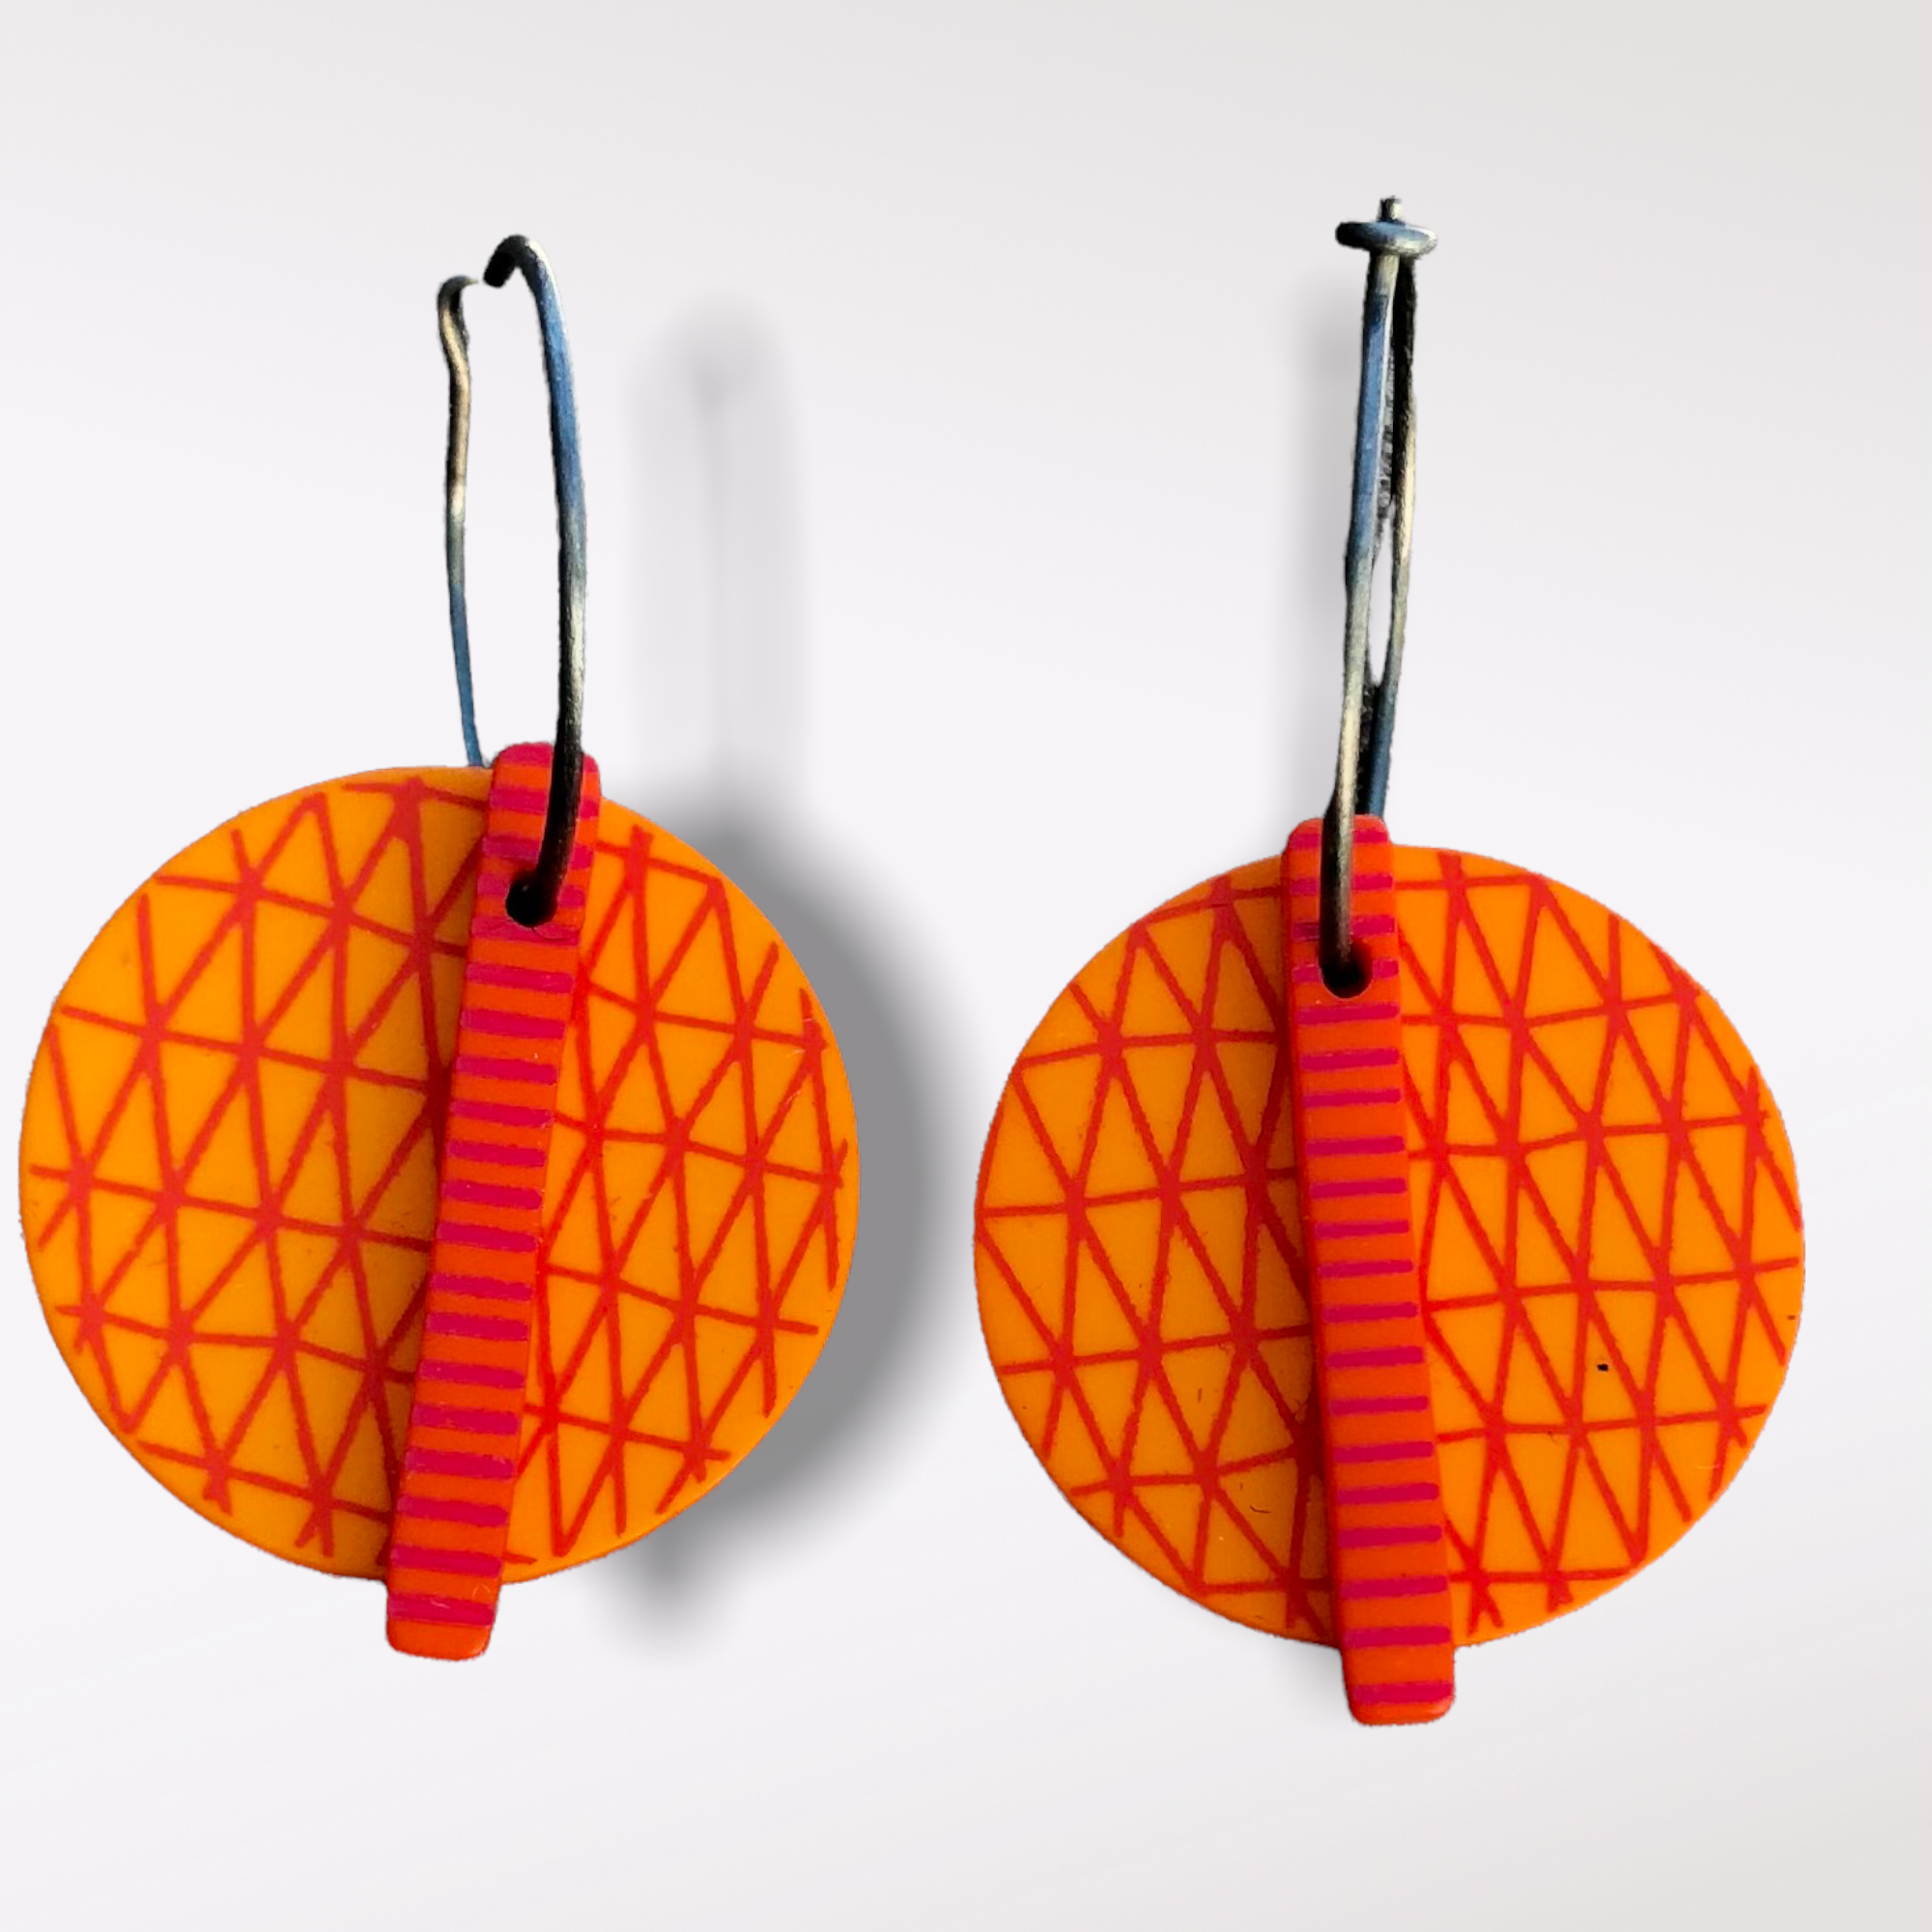 Ping - Orange örhängen i plexi och titan